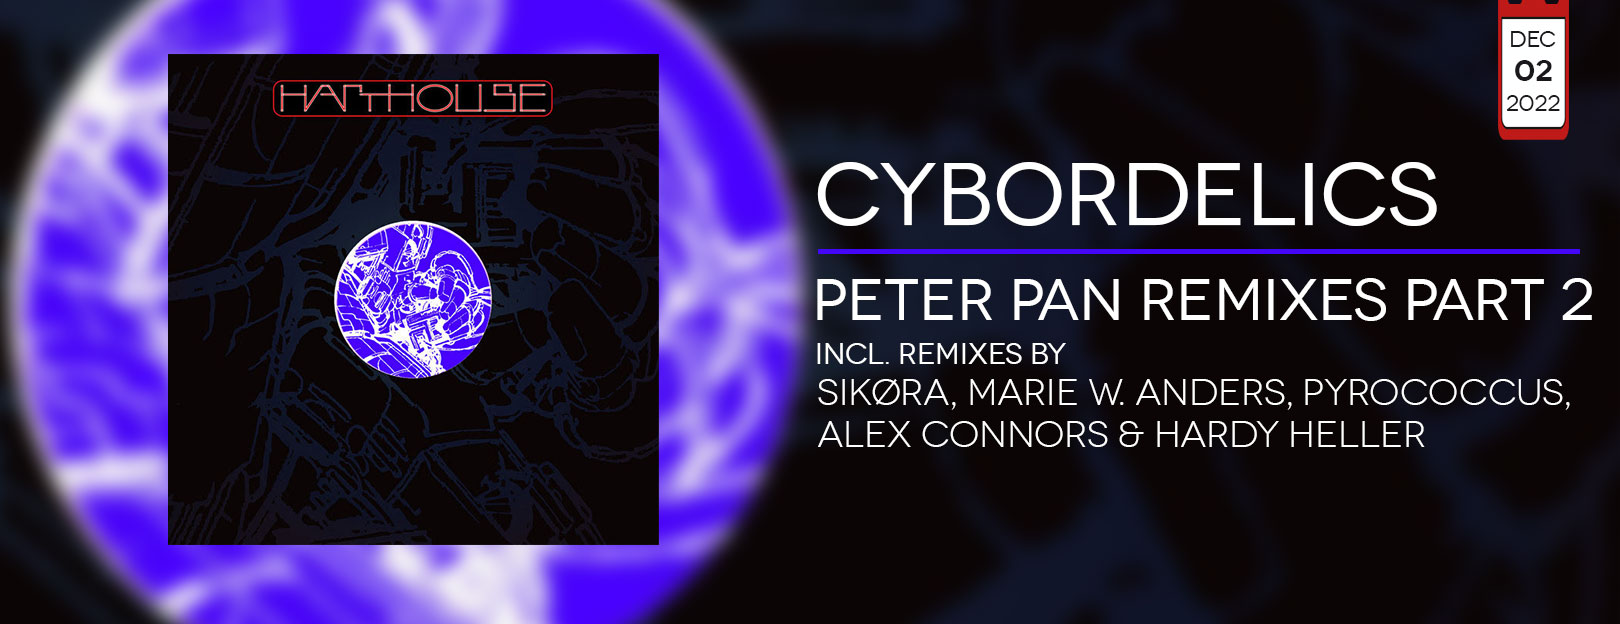 Cybordelics - Peter Pan - Remixes Part 2 banner.jpg